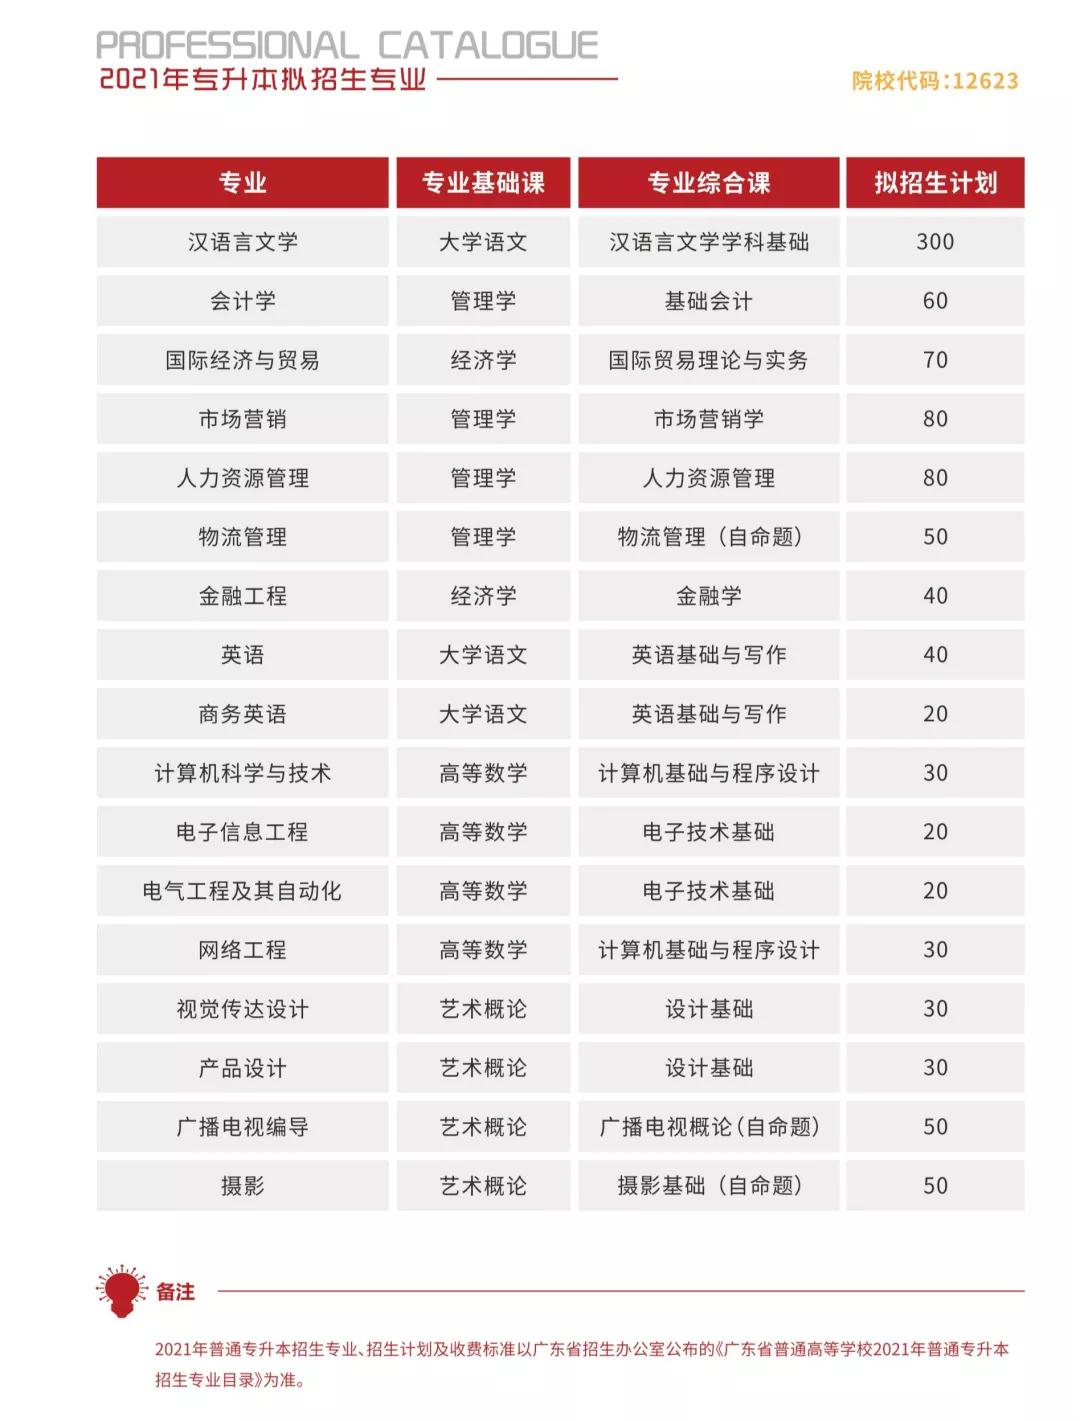 华南农业大学珠江学院 2021年普通专升本招生简章(图2)